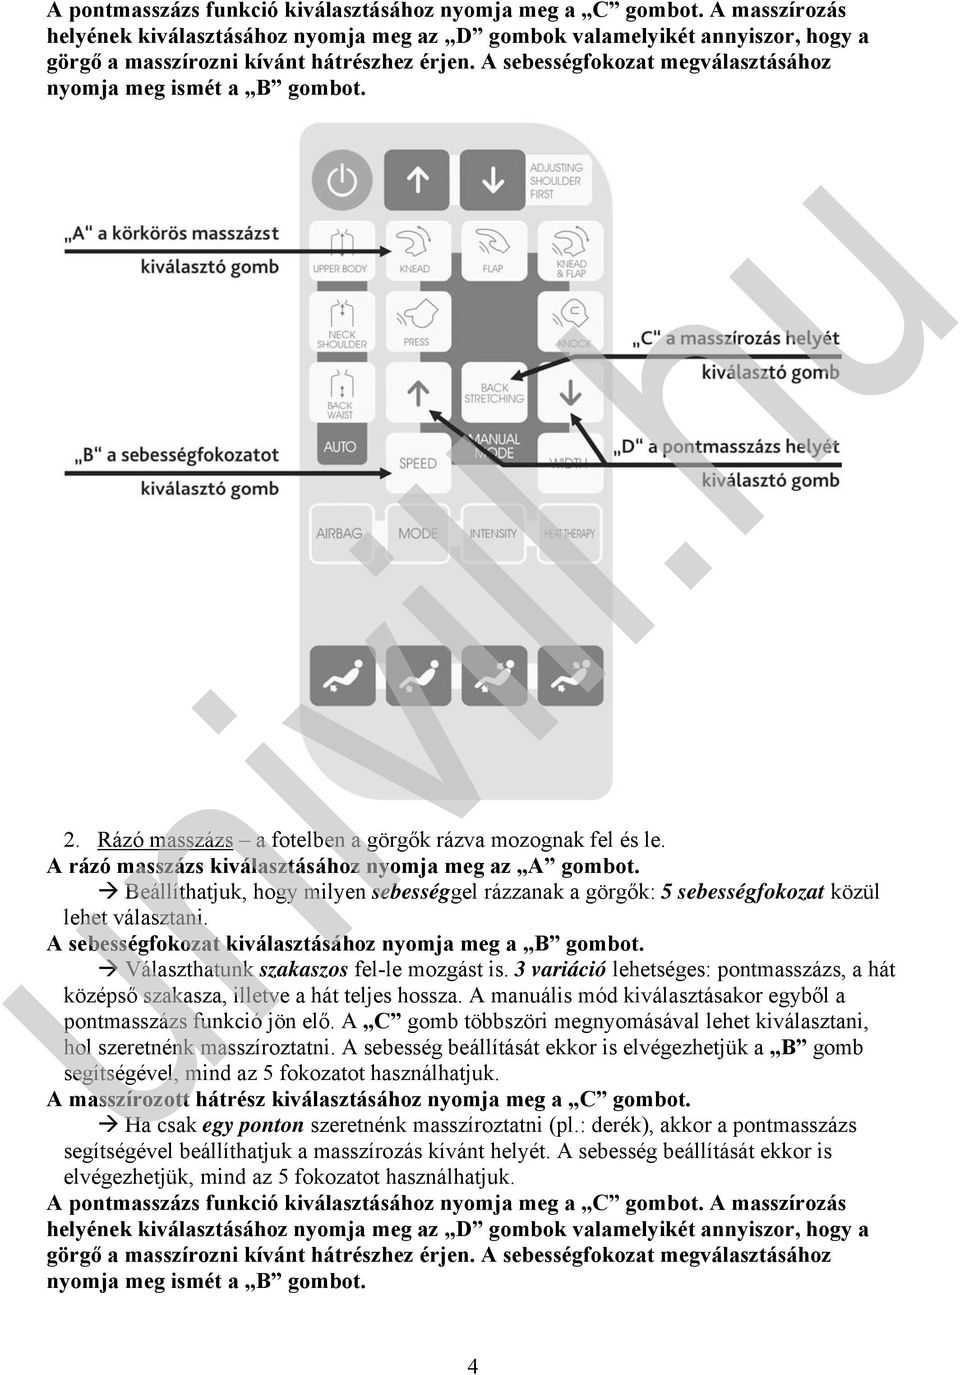 VIVAMAX professzionális masszázs fotel GYVM6. univill.hu. A fotel  programjainak részletes ismertetése - PDF Ingyenes letöltés